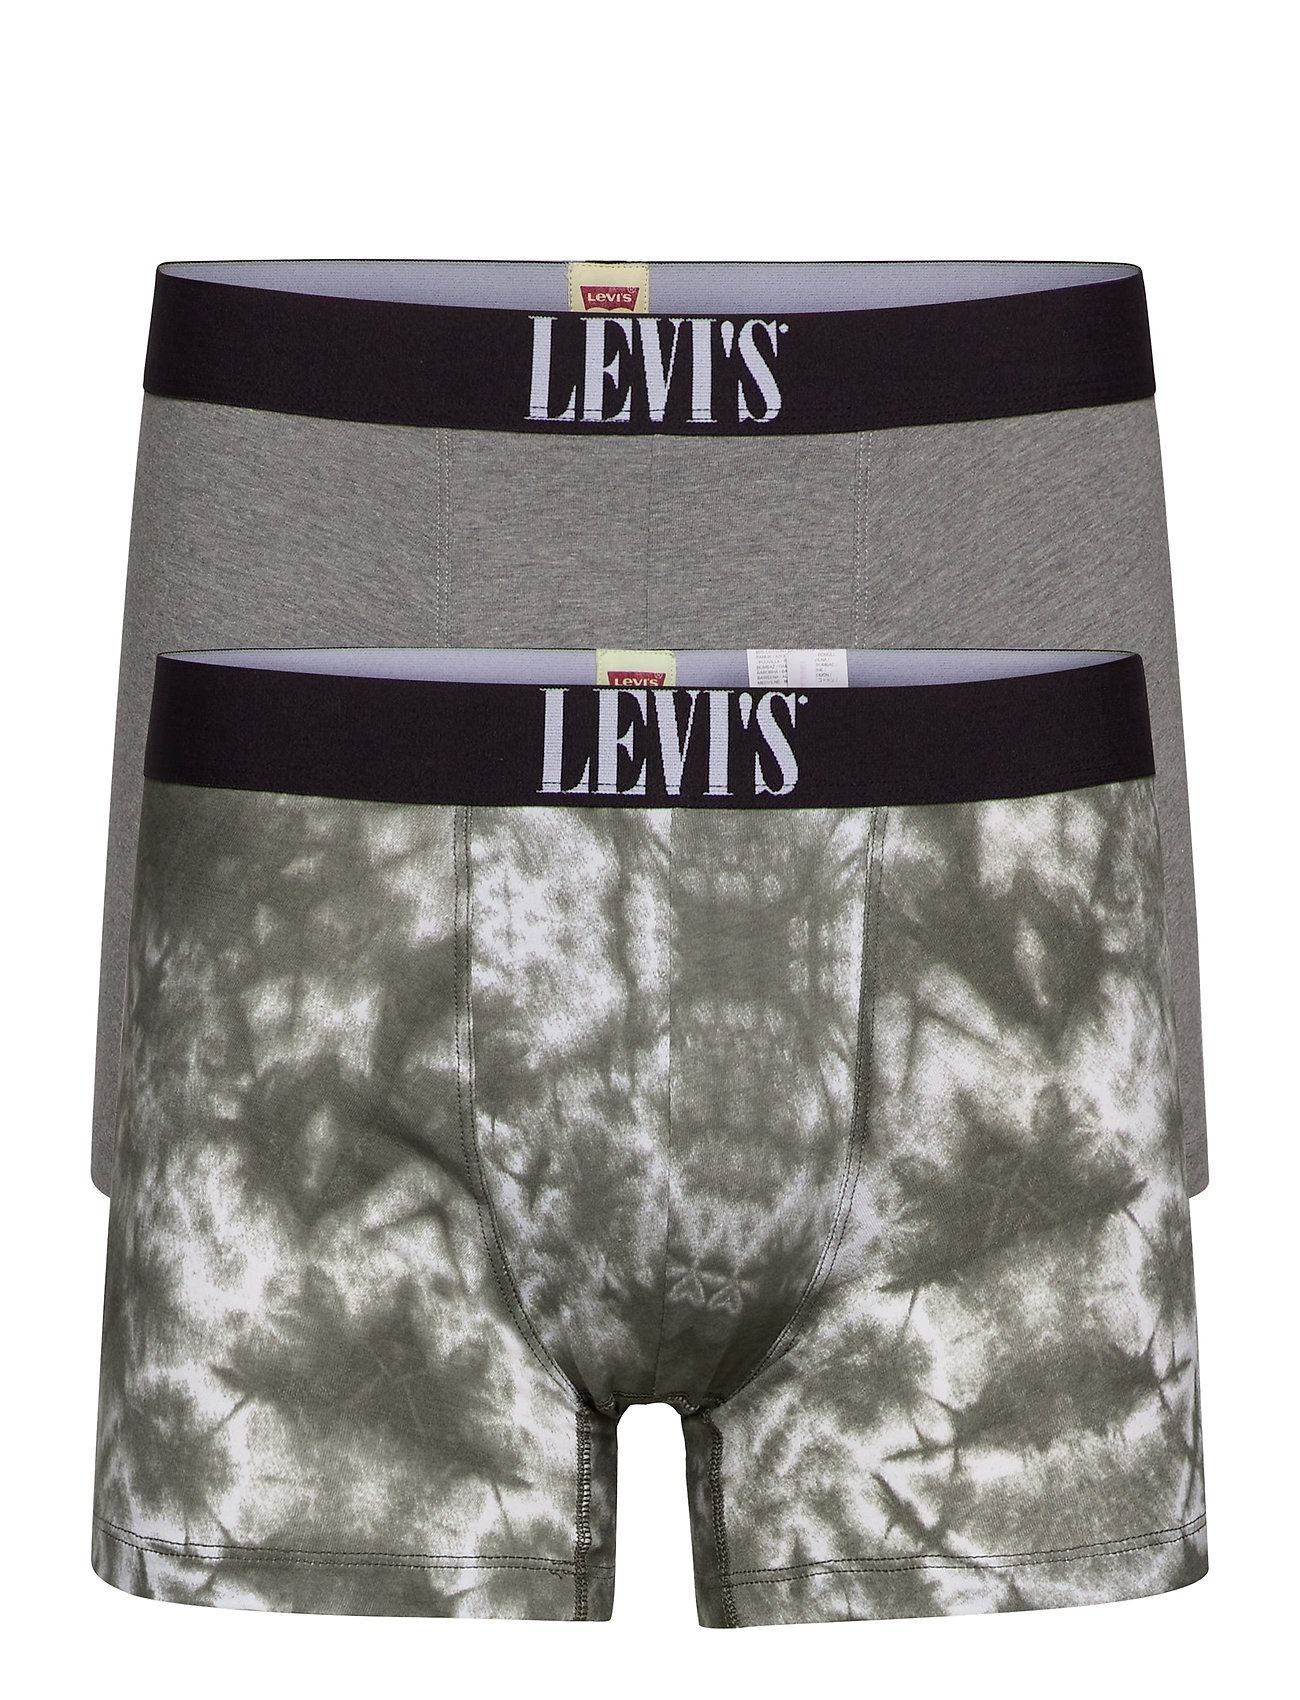 levis underwear briefs